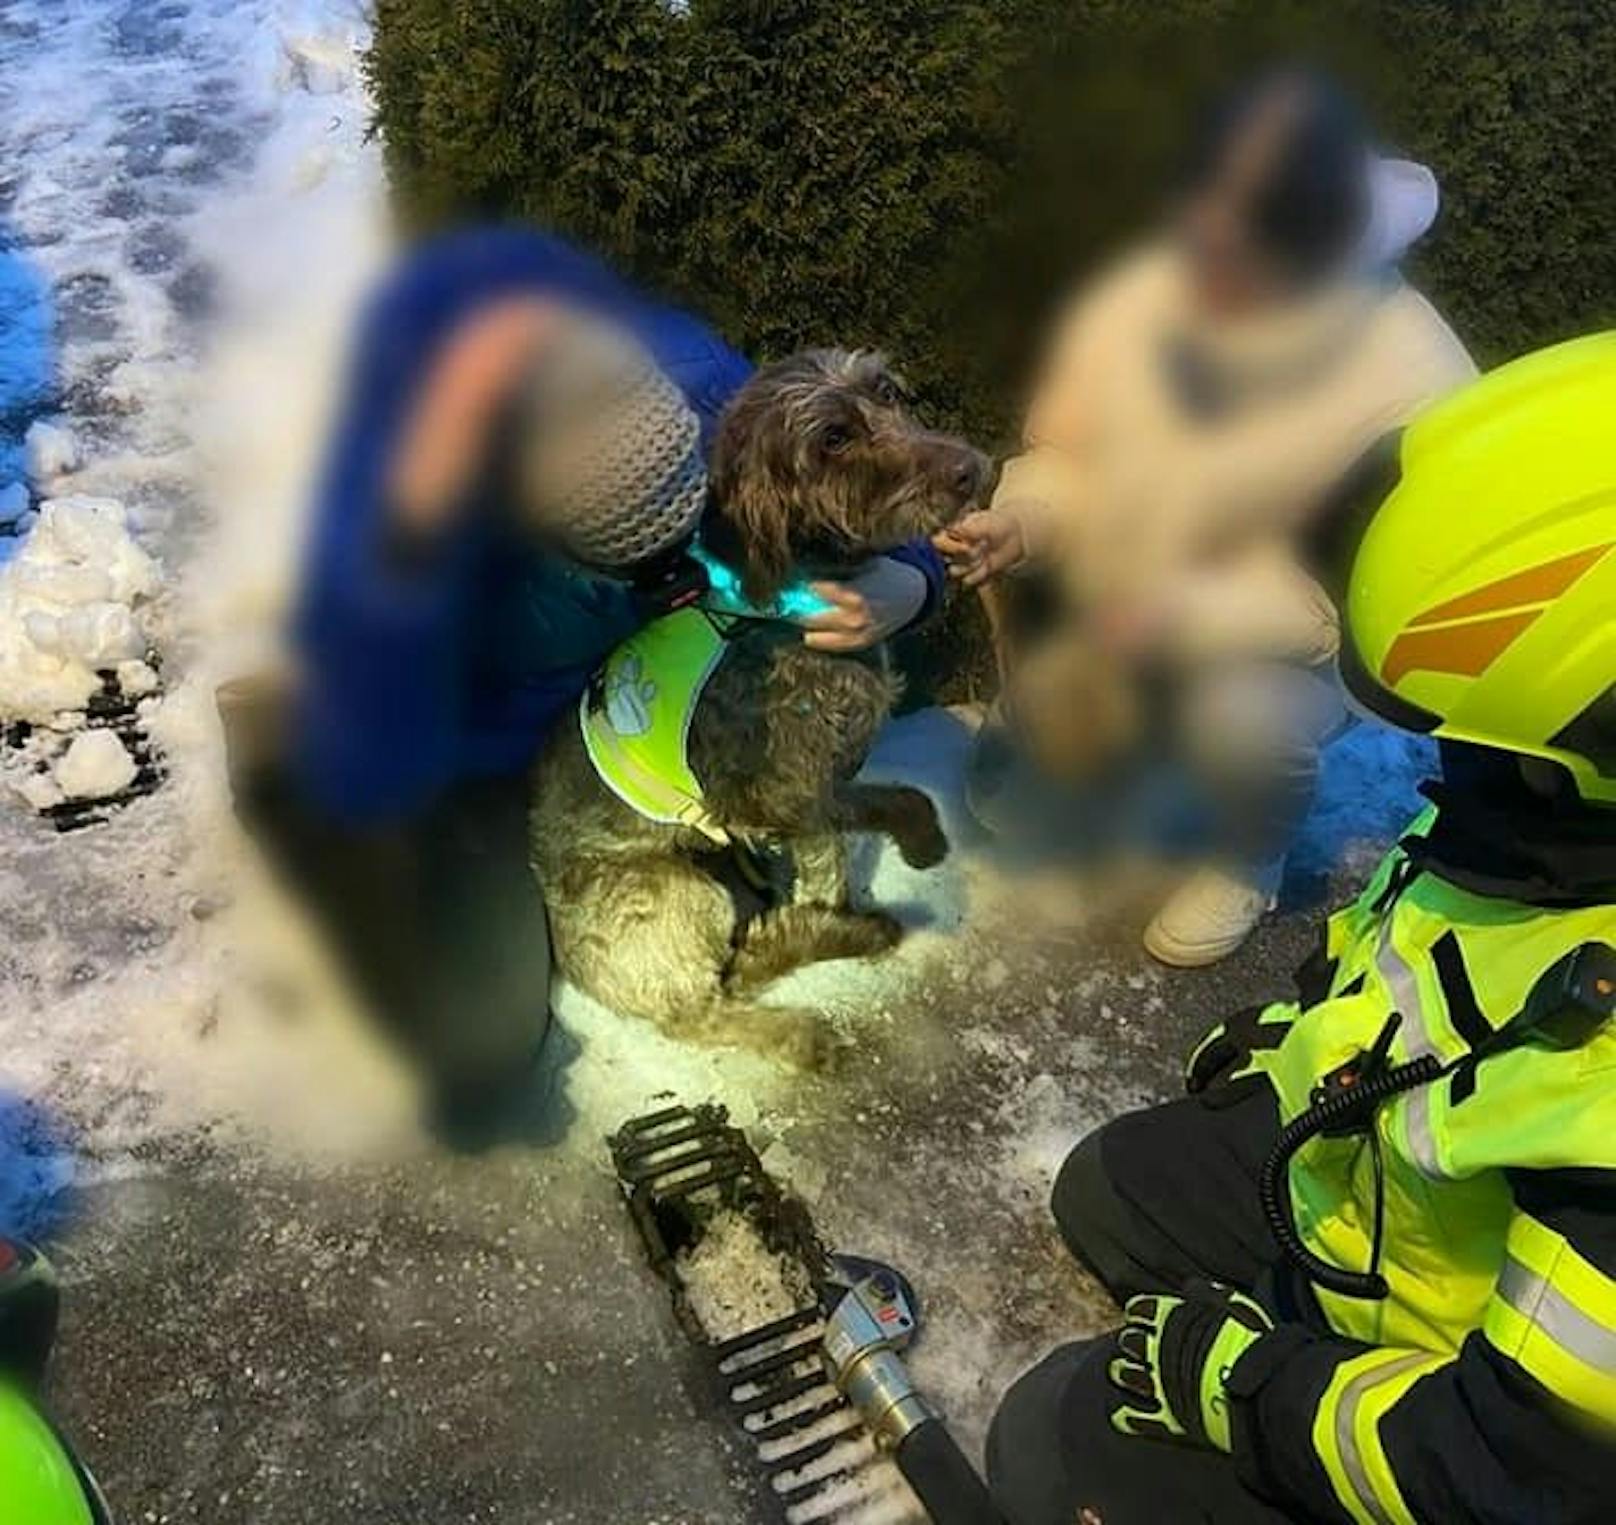 Nach der Rettung konnte der Hund an seine Besitzerin übergeben werden.